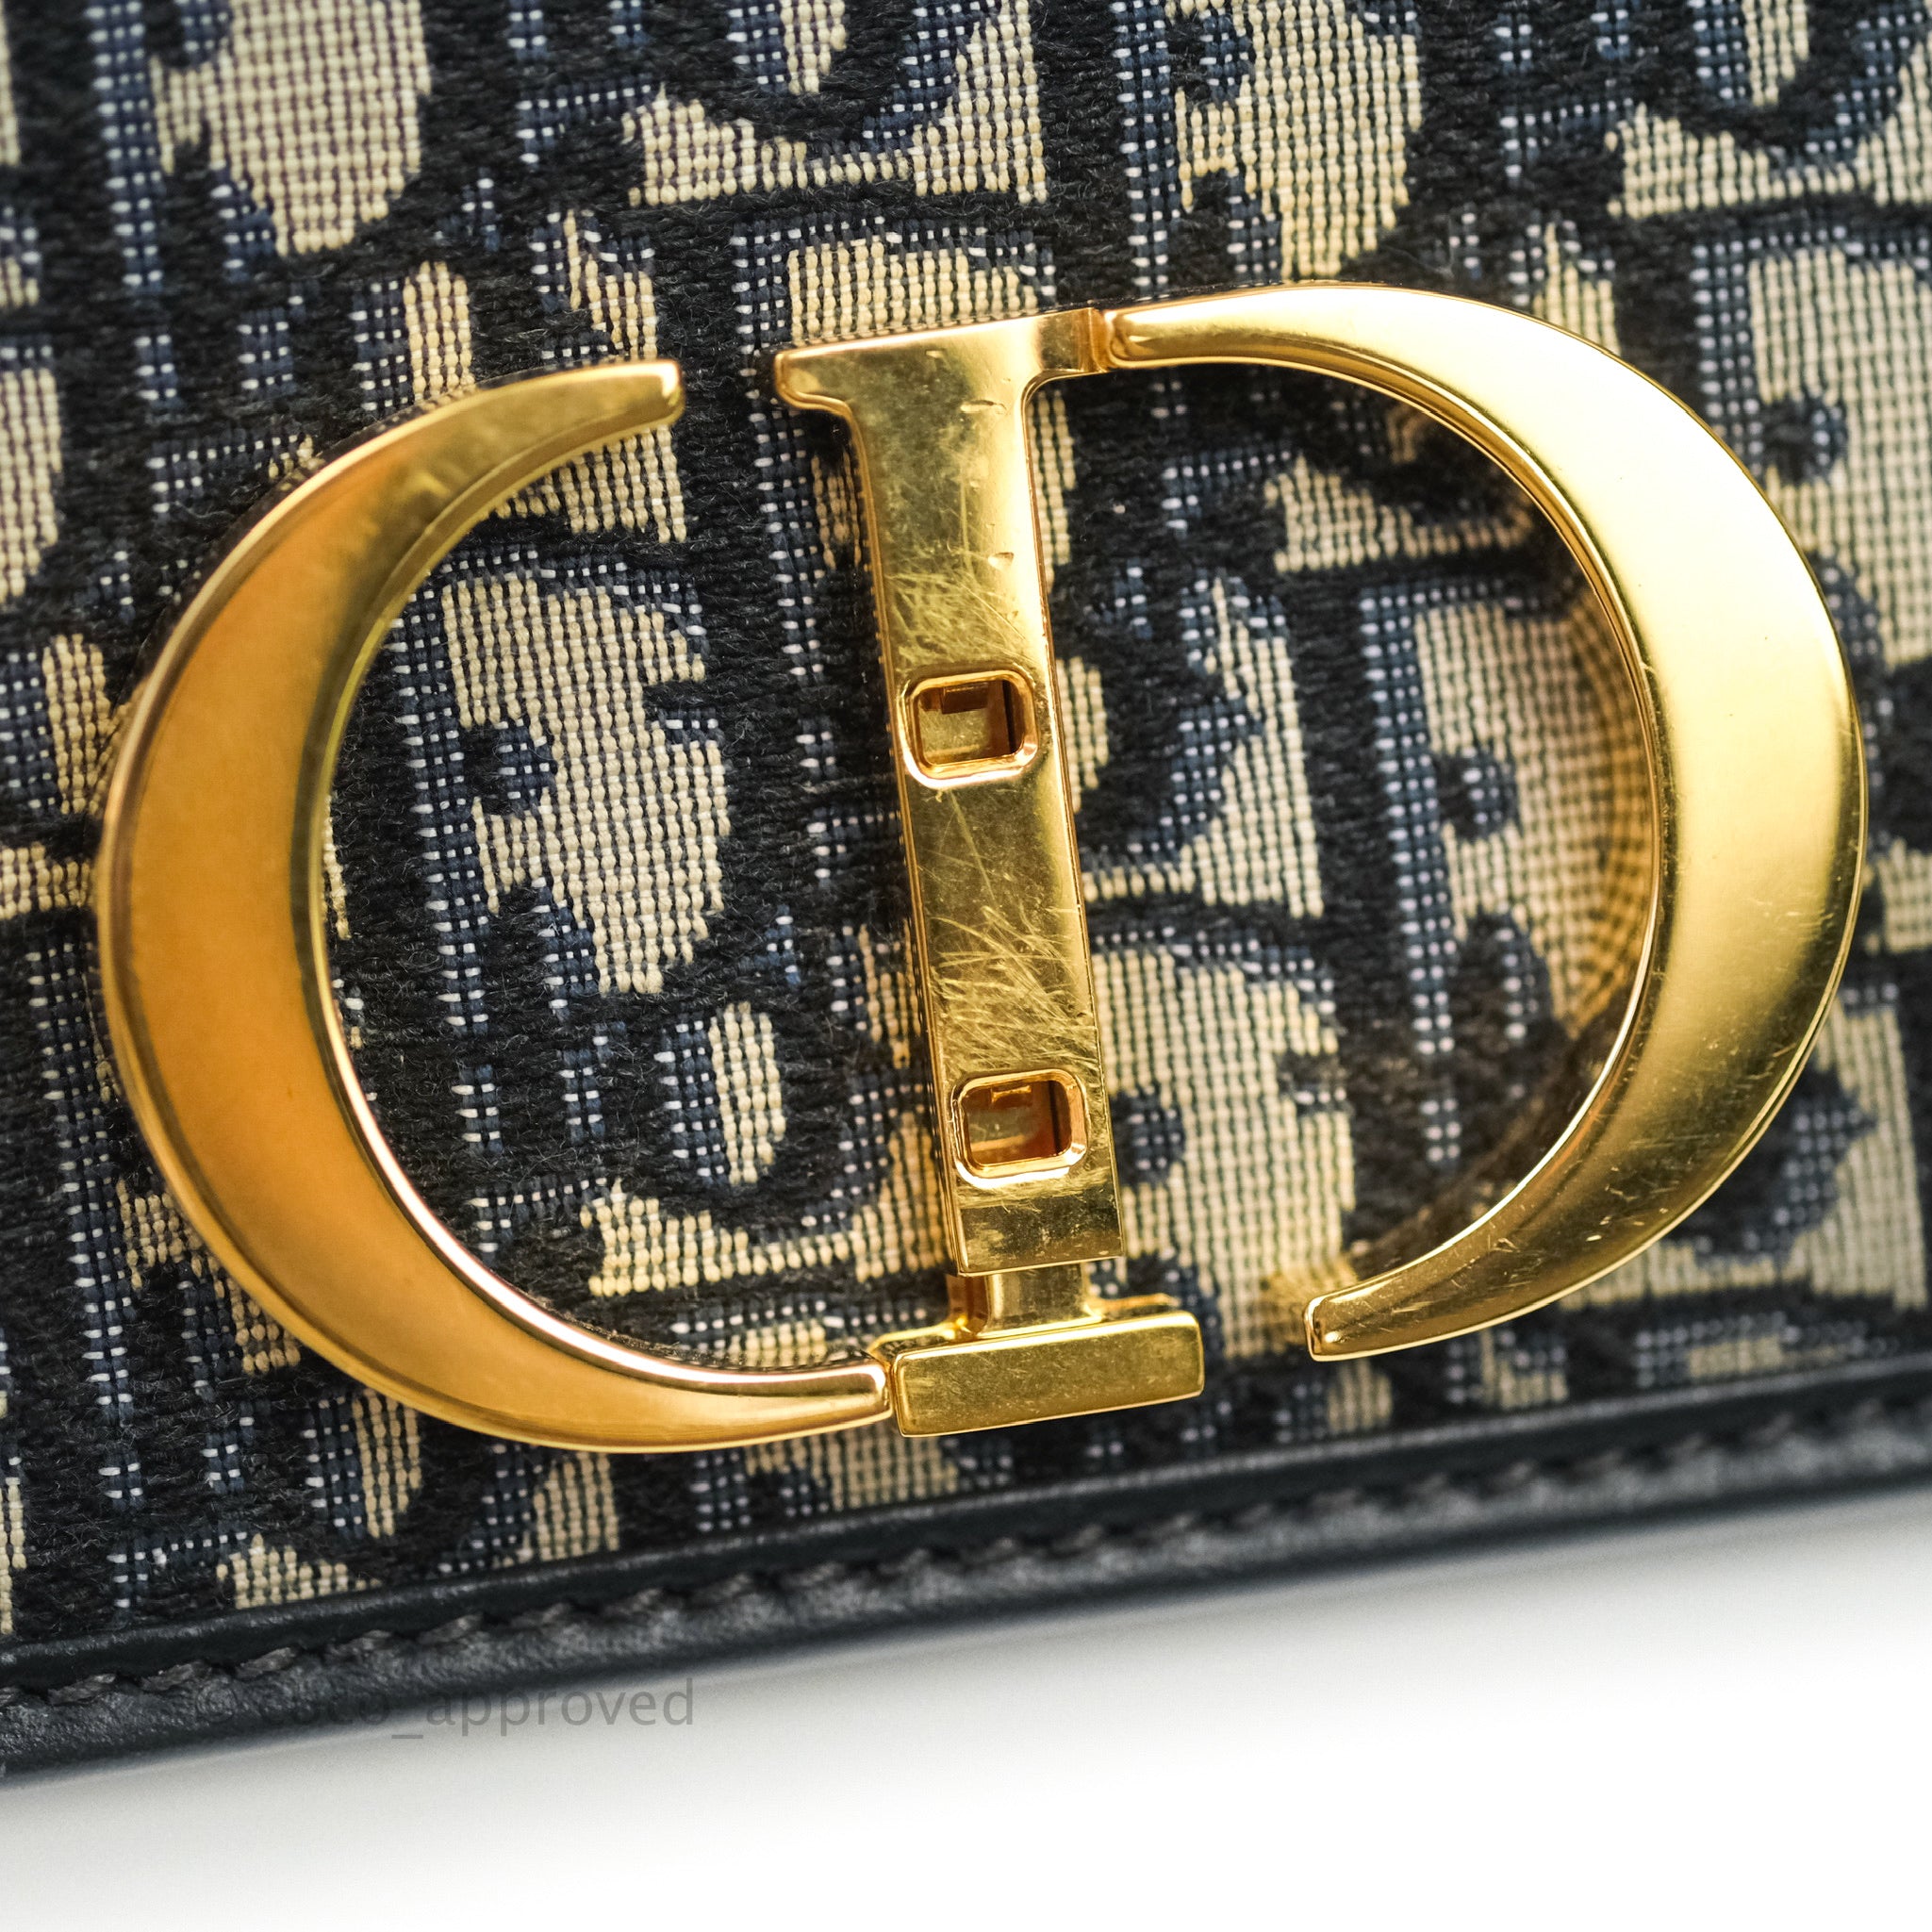 Dior 30 Montaigne Bag Blue Dior Oblique Jacquard – Coco Approved Studio